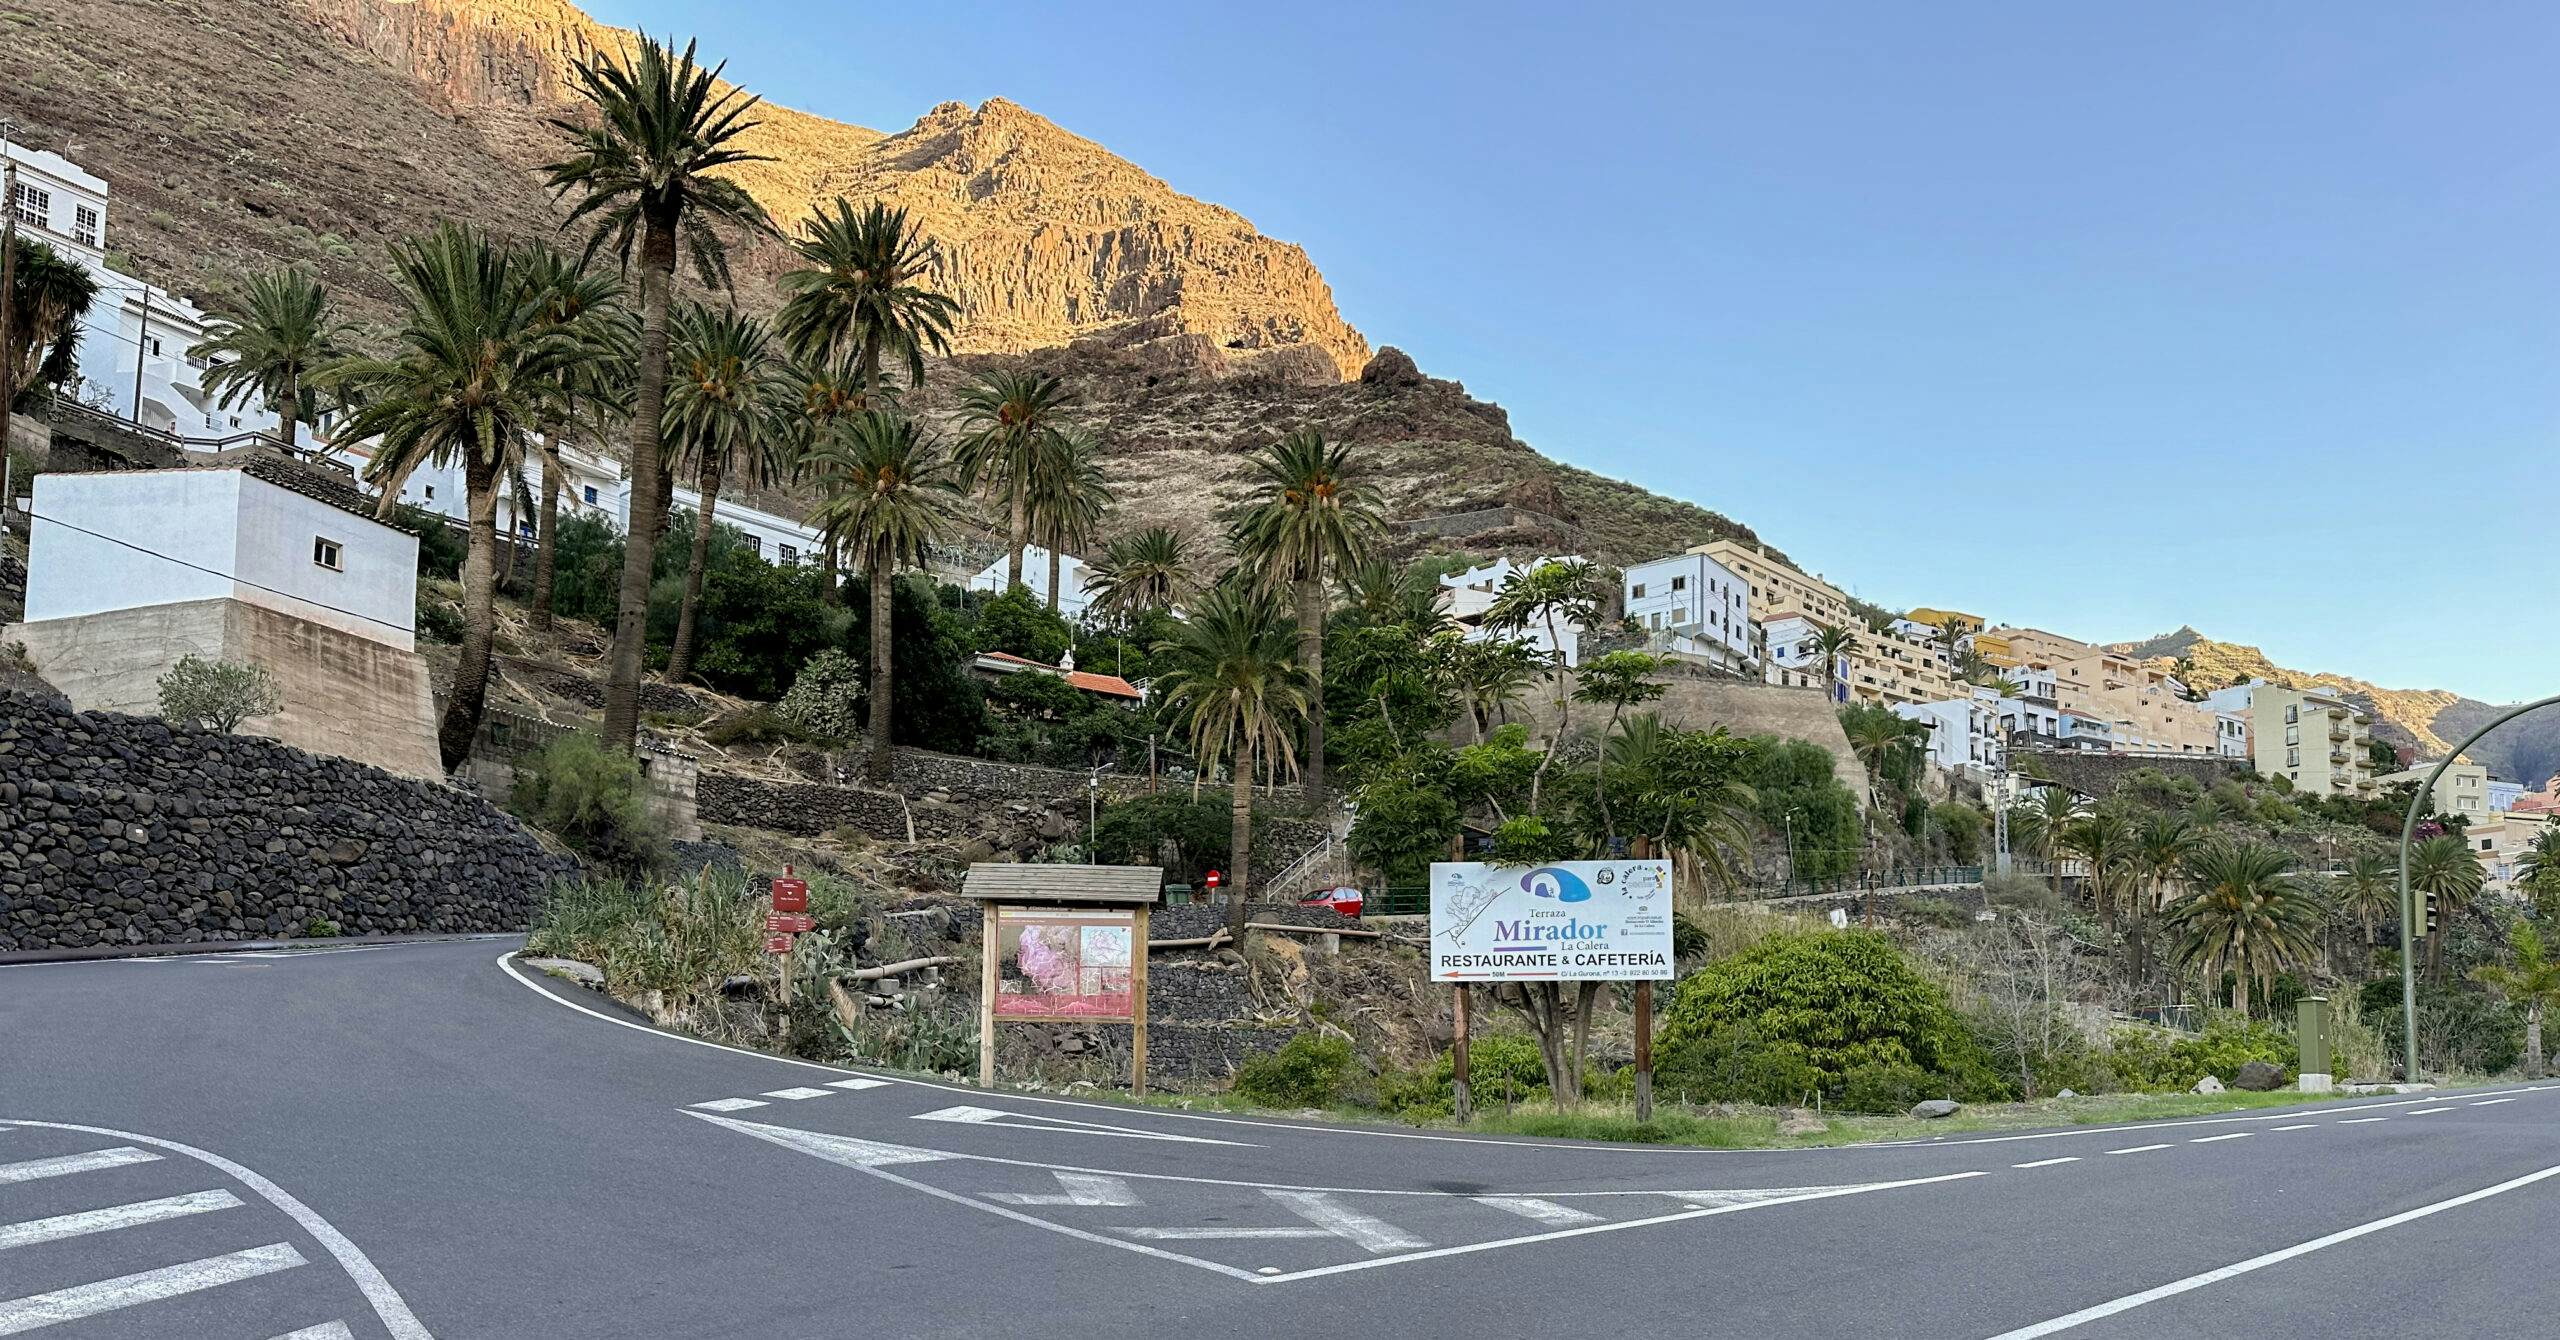 Startpunkt der Wanderung im Valle Gran Rey an der GM-1 nahe dem Ortsteil Calera